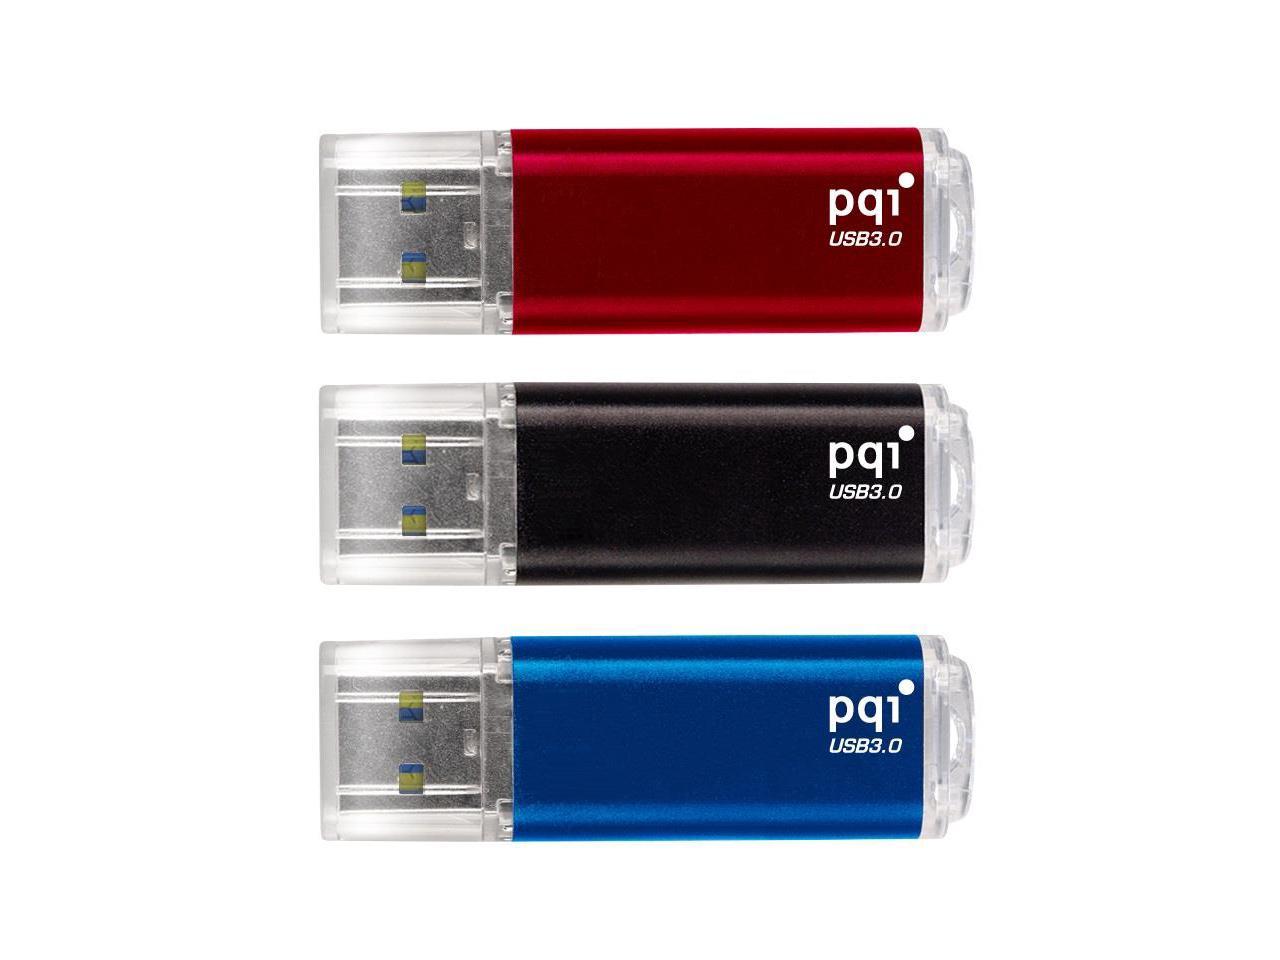 PQI 32GB U273V Traveling Disk USB3.0 Color Red Flash Drive Model 627V-032GR9001